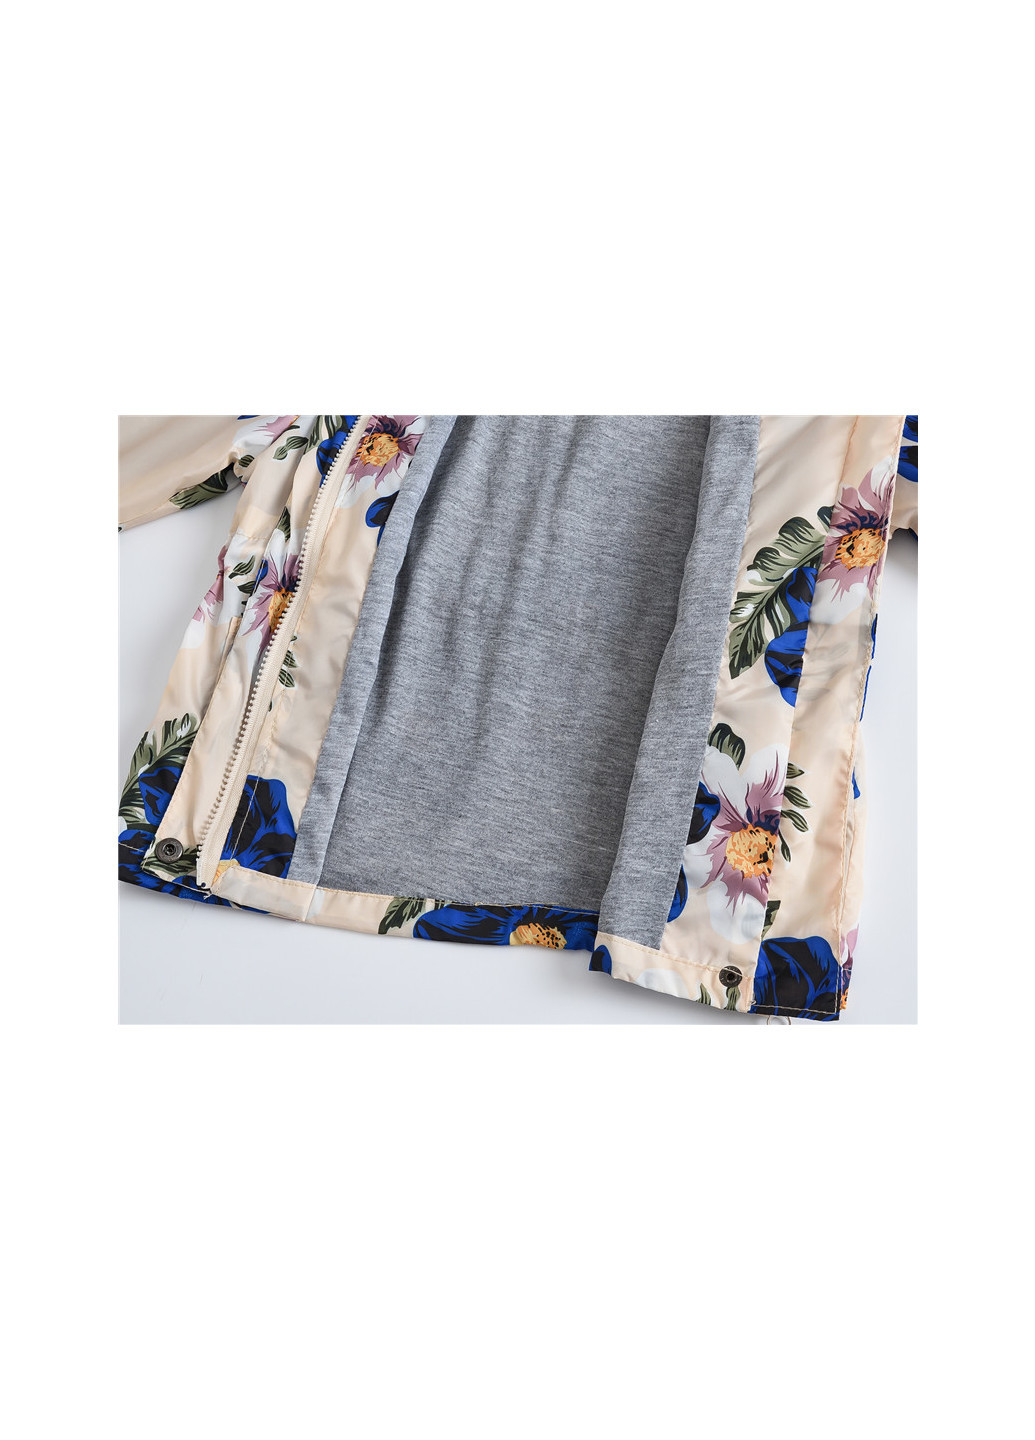 Бежевая демисезонная куртка-ветровка для девочки синие цветы шиповника Jomake 51123